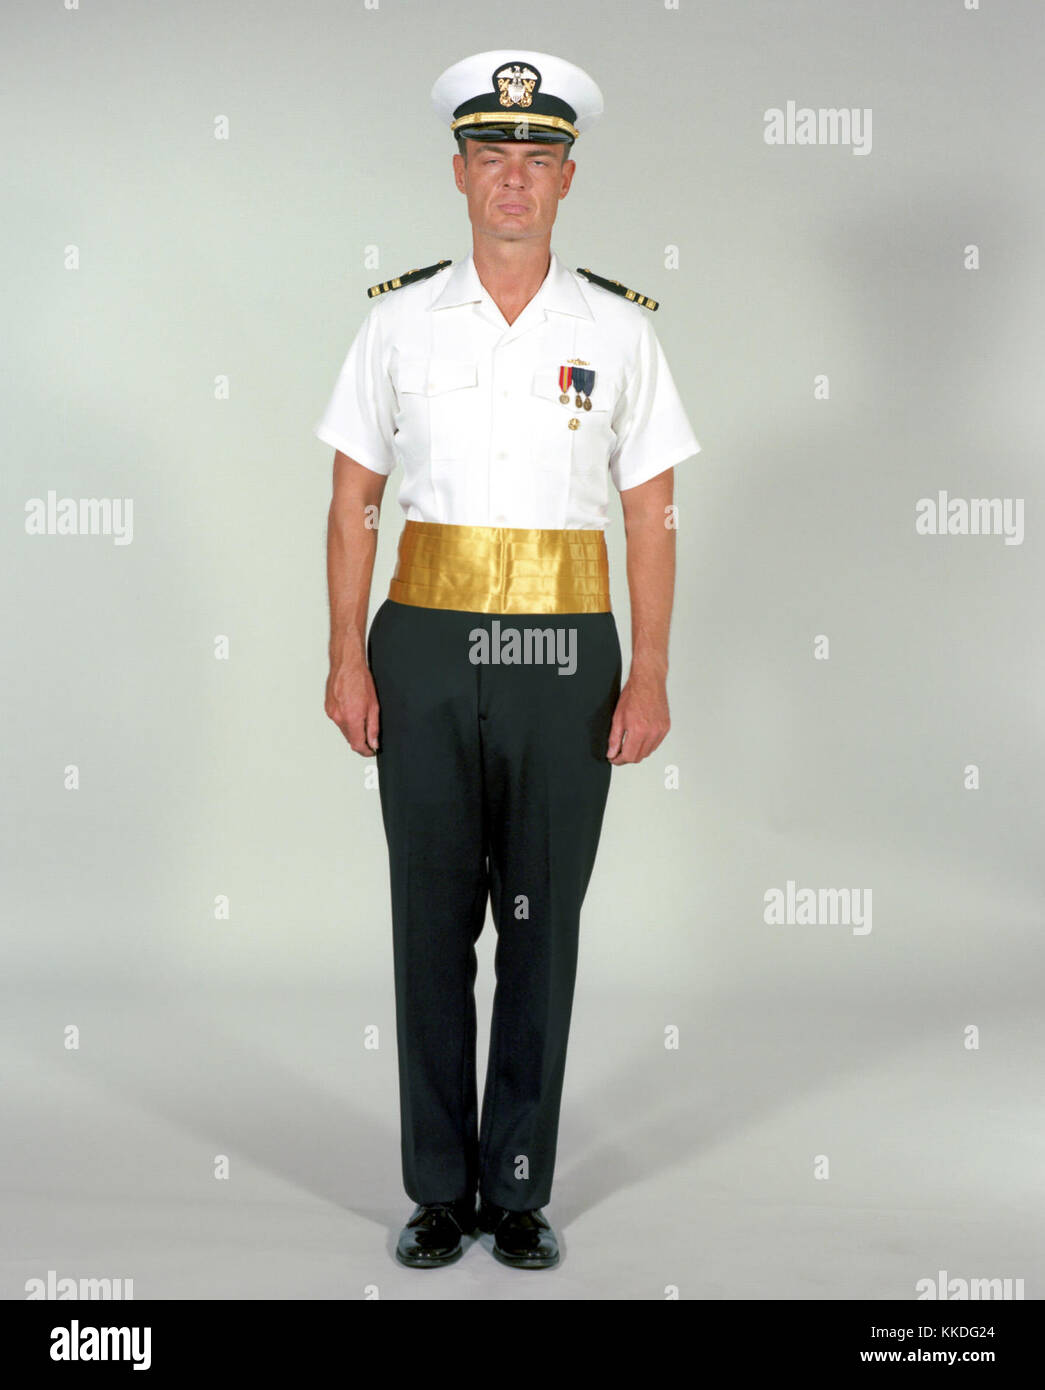 Uniforme de vestir marino fotografías e imágenes de alta resolución - Alamy